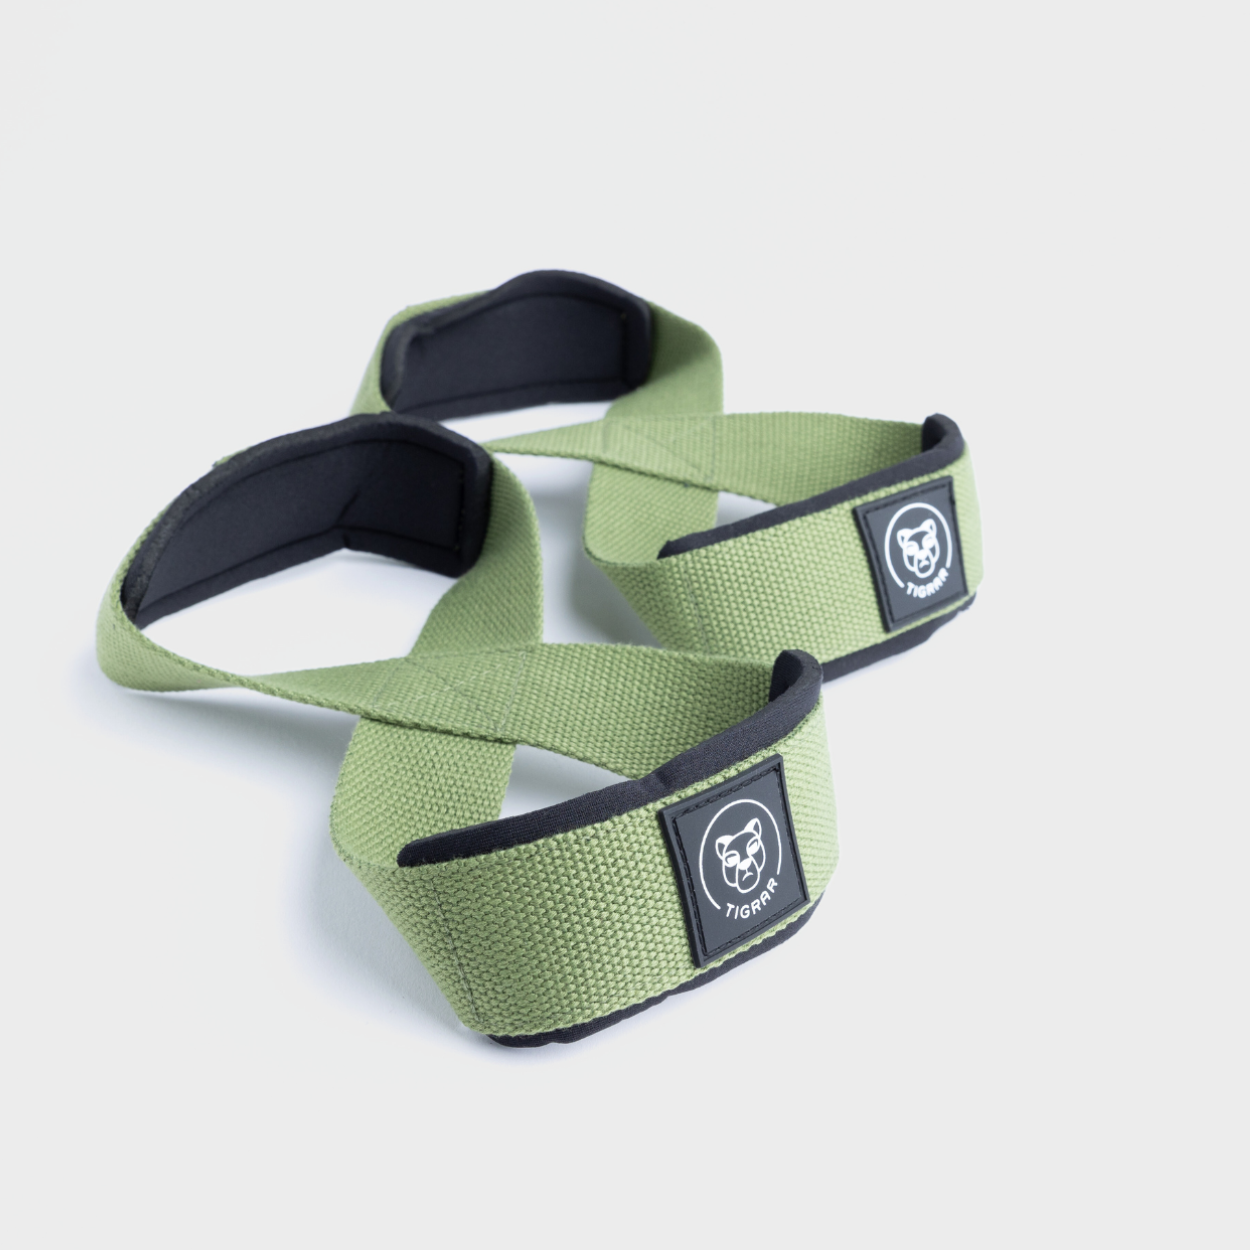 groene lifting straps van Tigrar in Figure 8 ontwerp, ideaal voor gewichtheffers, op een grijze achtergrond.